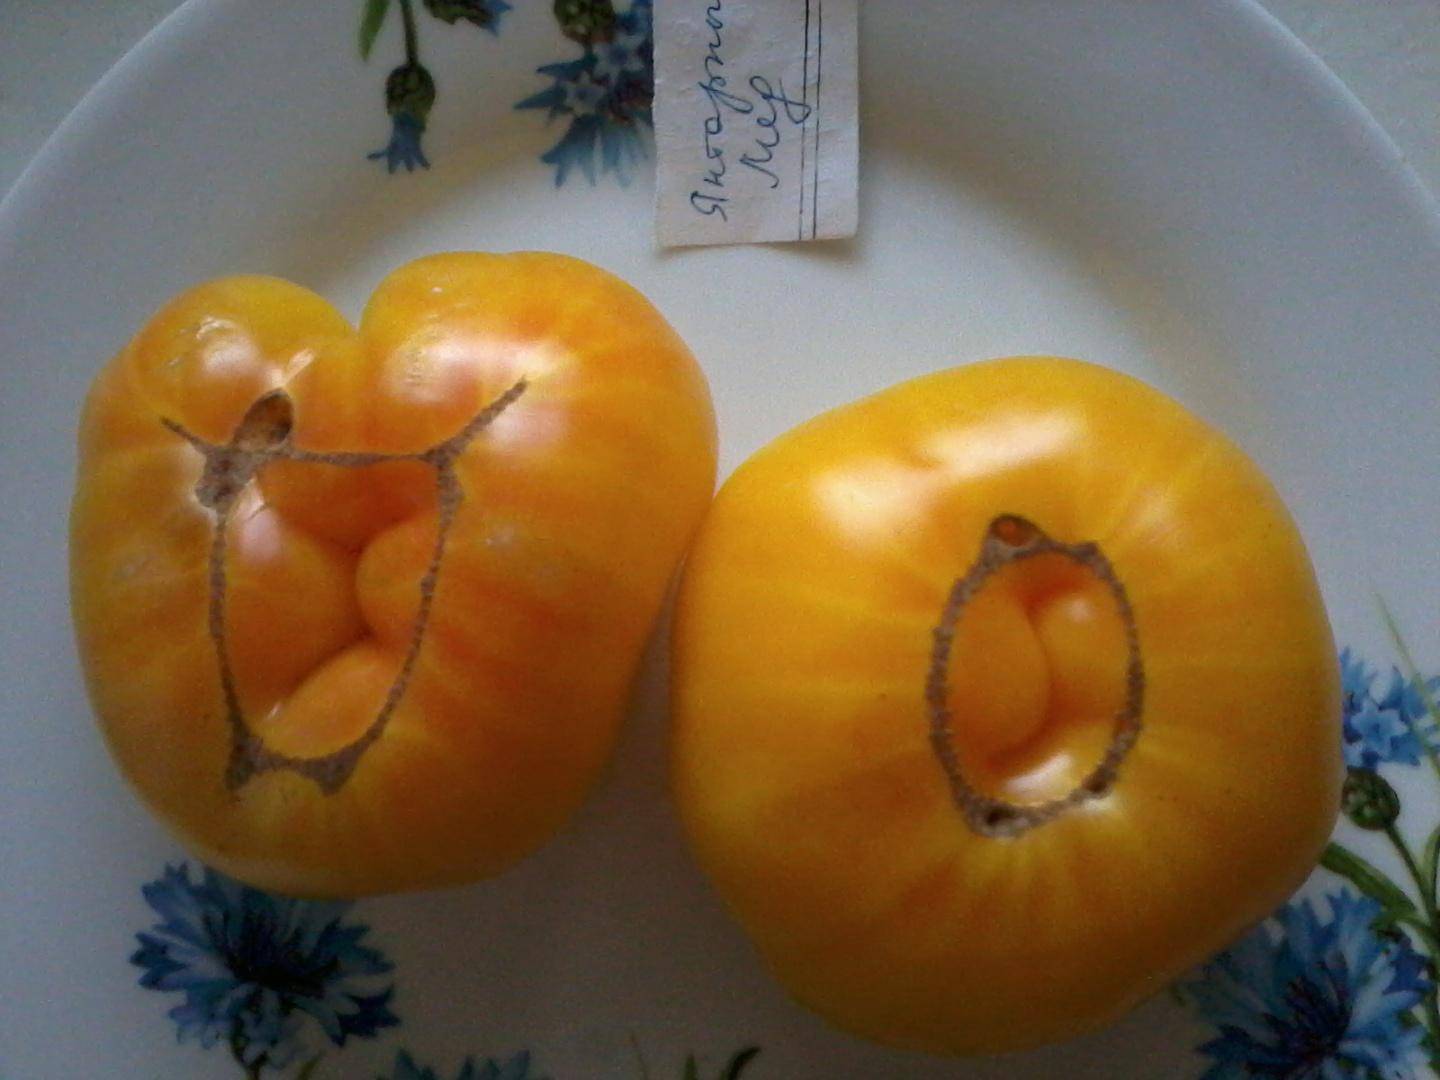 Сорт со сладкими плодами — томат янтарное сердце f1: отзывы об урожайности, описание помидоров